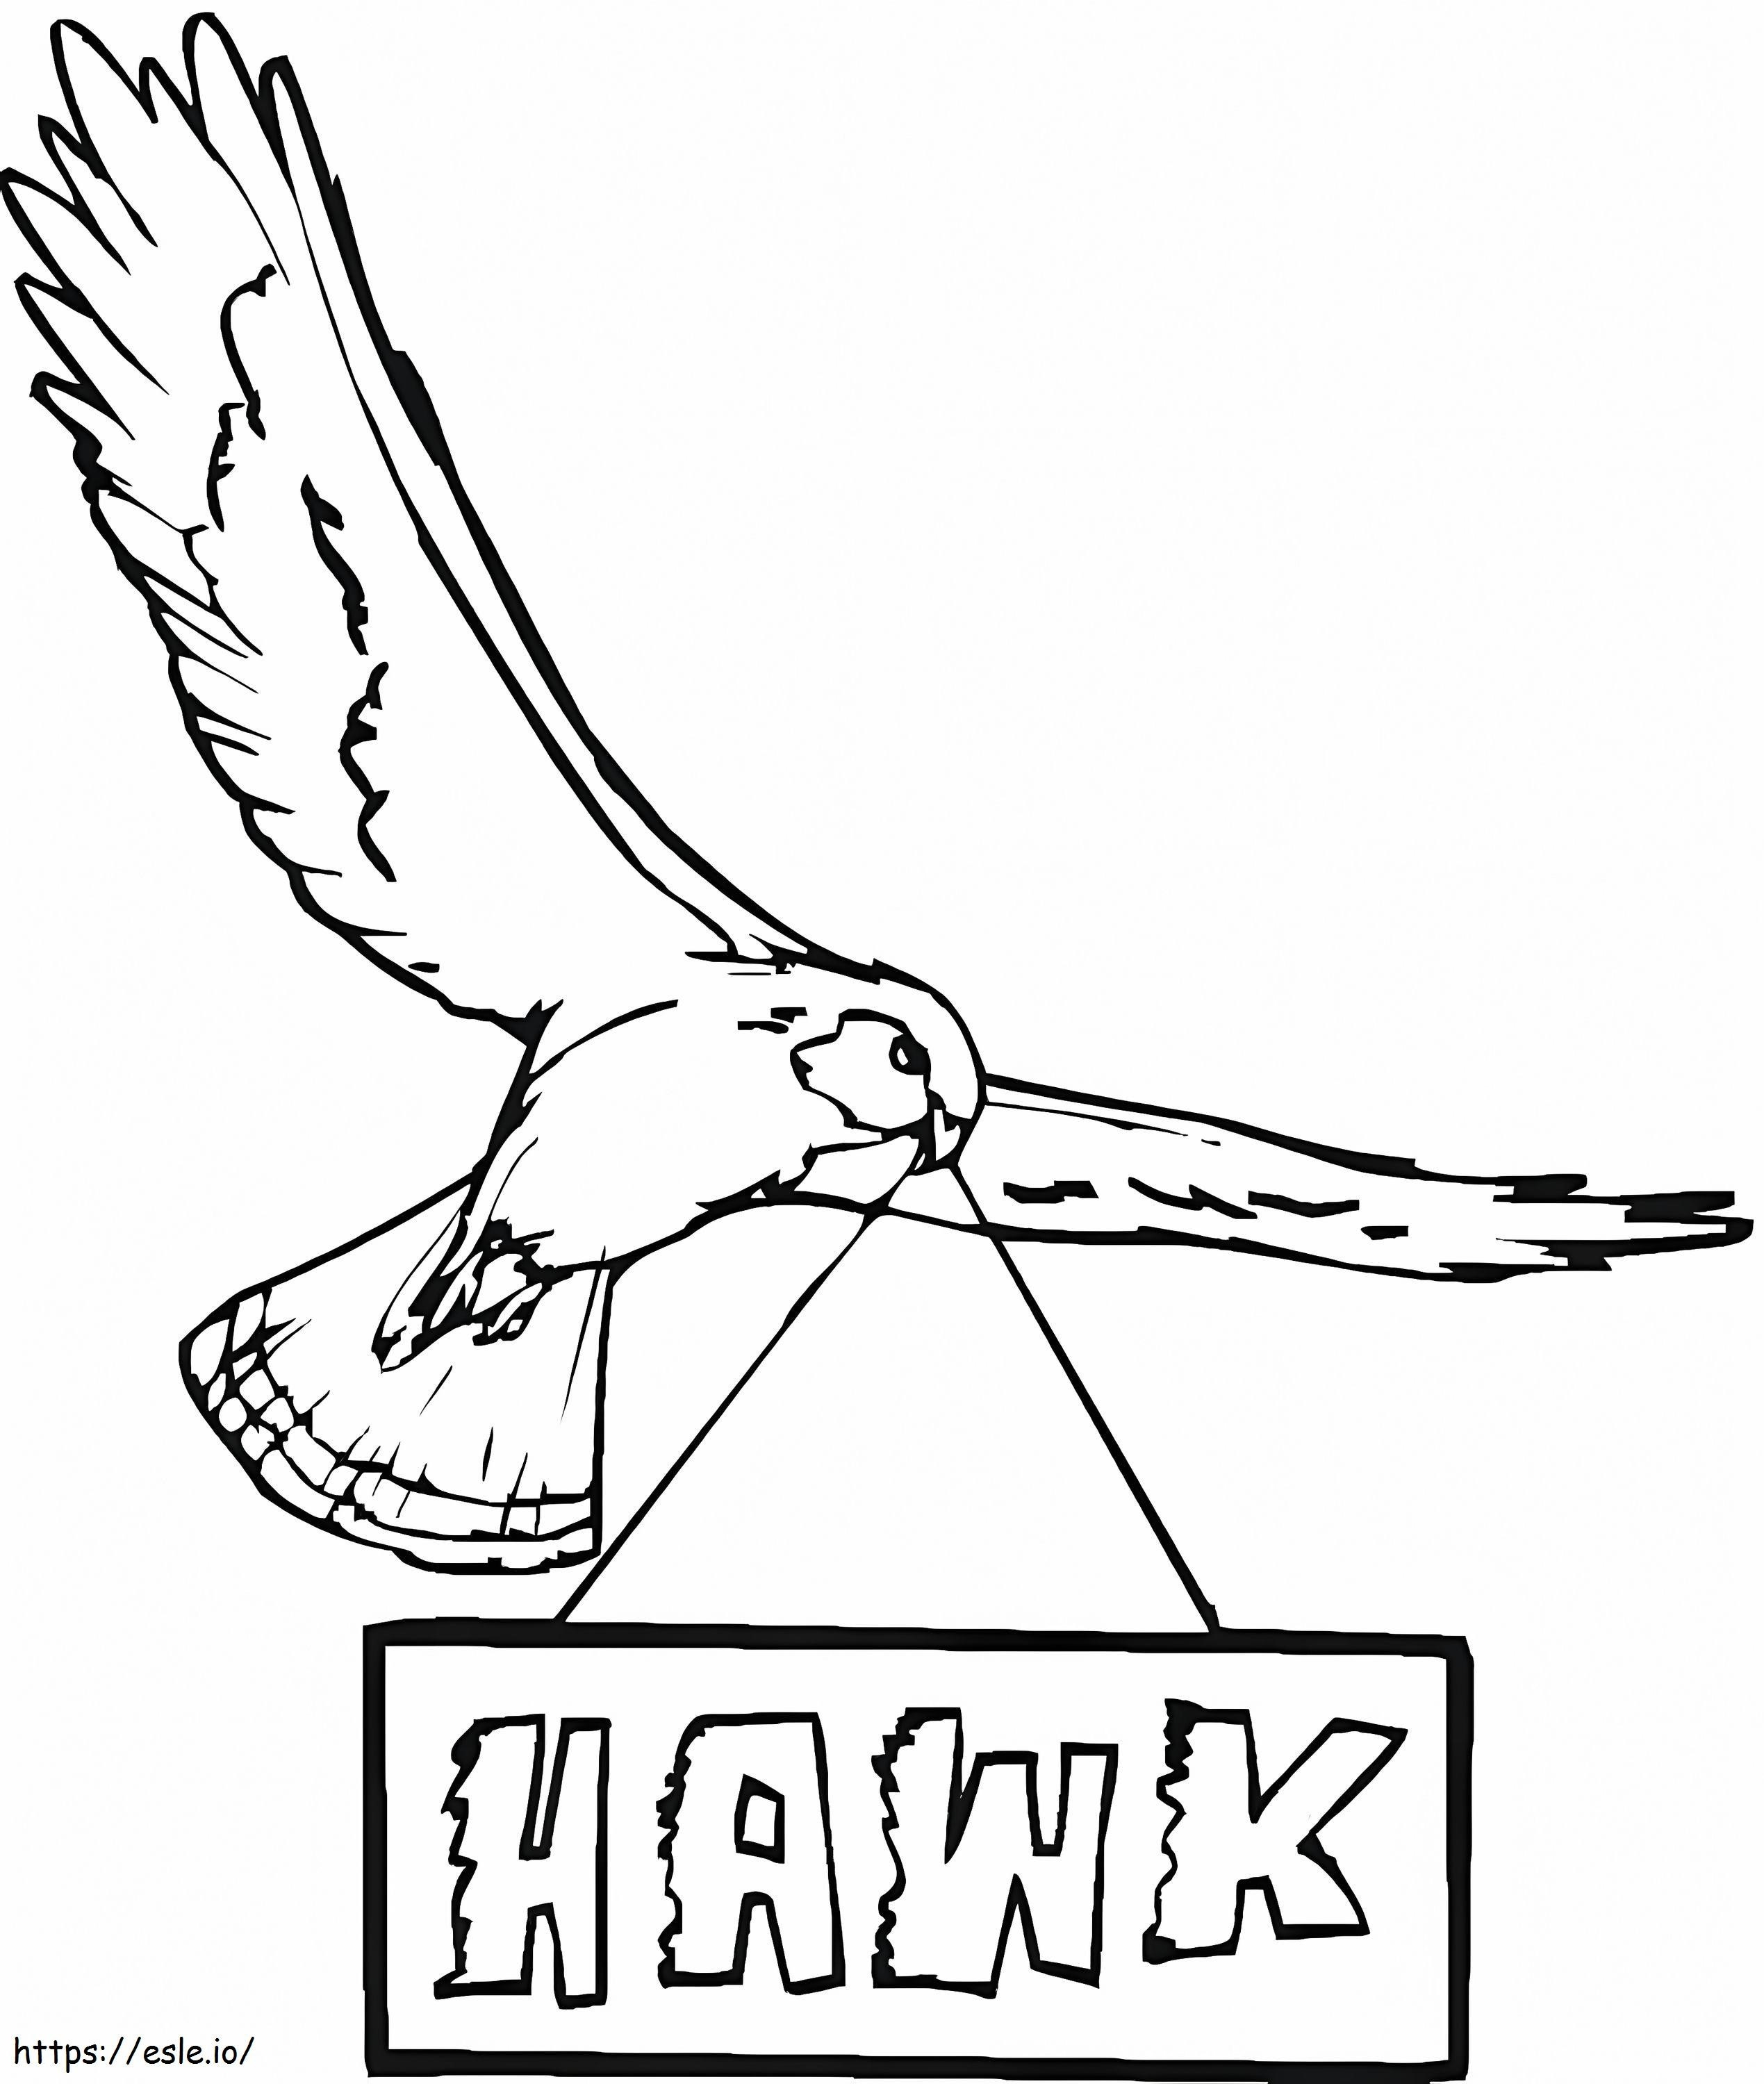 Hawk 8 coloring page